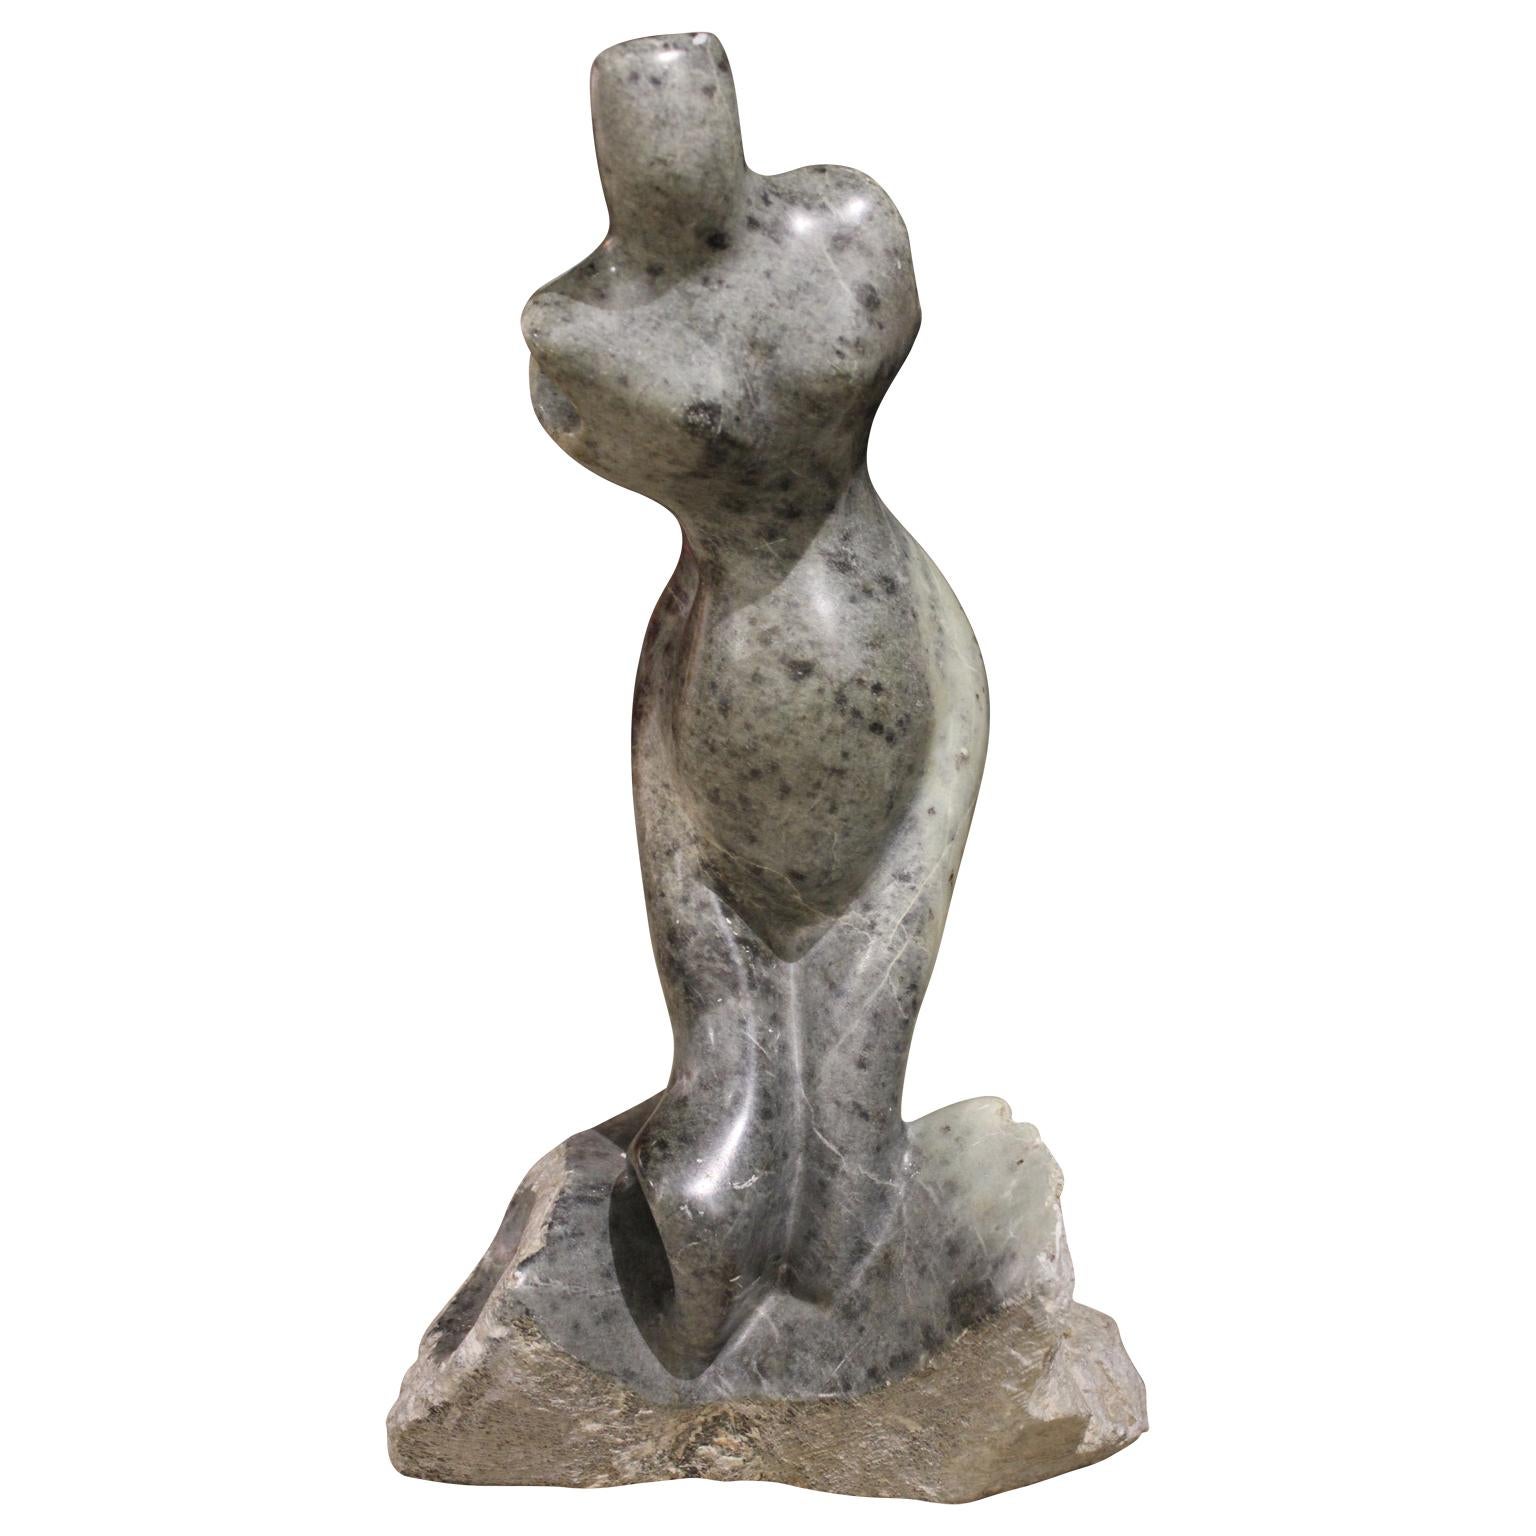 Jose Zacarias Nude Sculpture - Figurative Grey Stone Sculpture of a Female